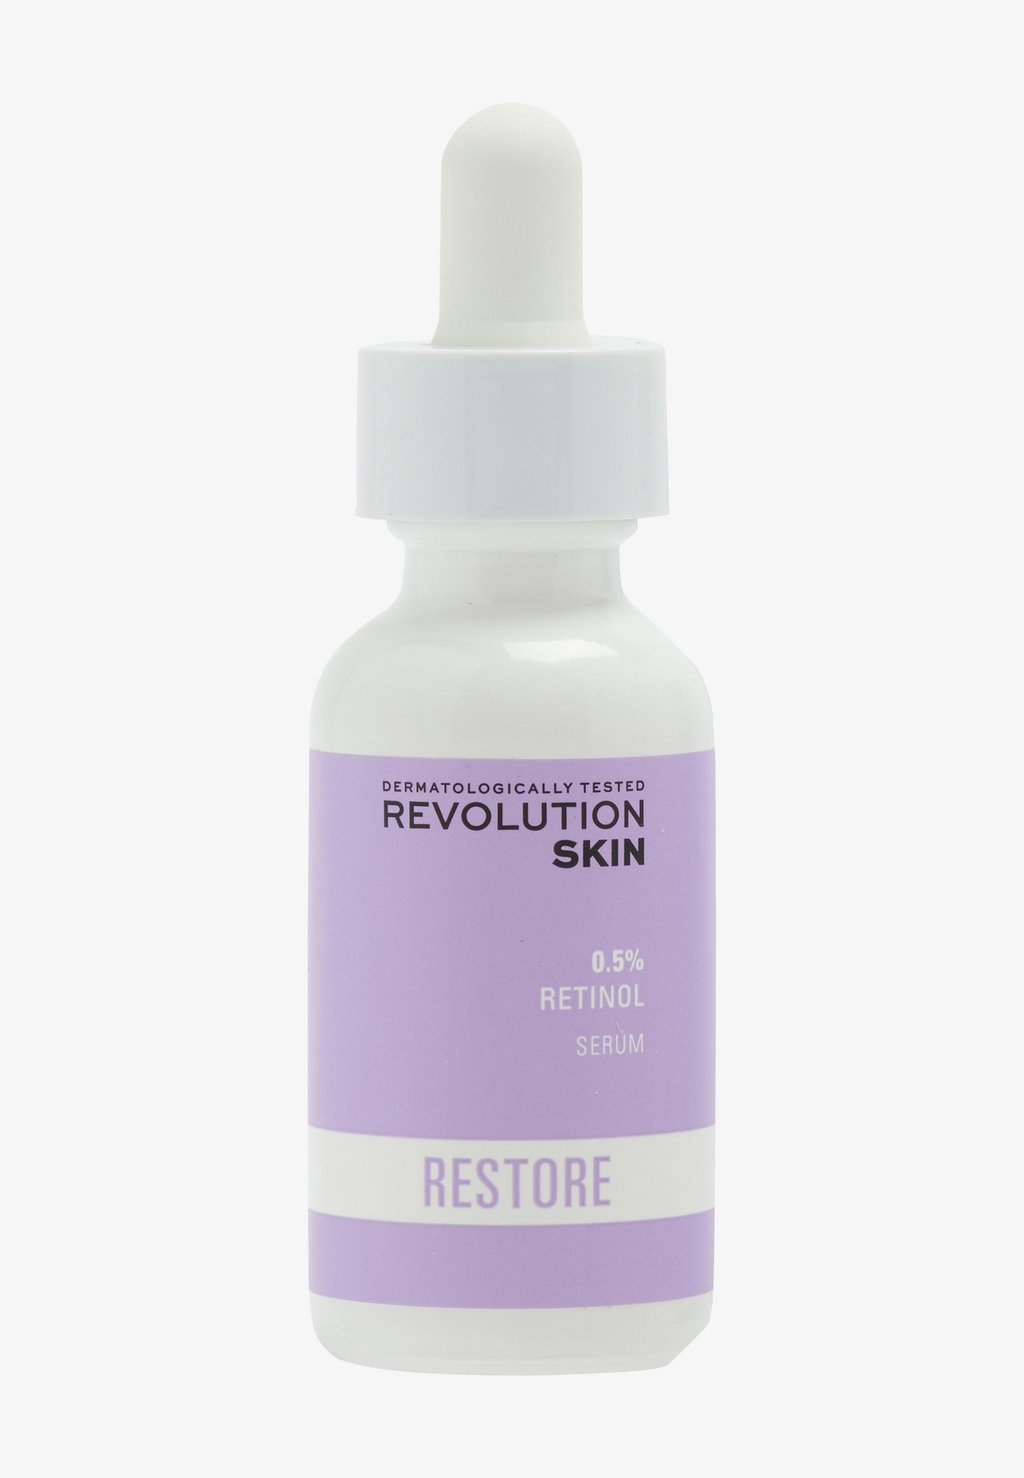 Сыворотка 0.5% RETINOL INTENSE SERUM Revolution Skincare retinol 30 мл revolution skincare